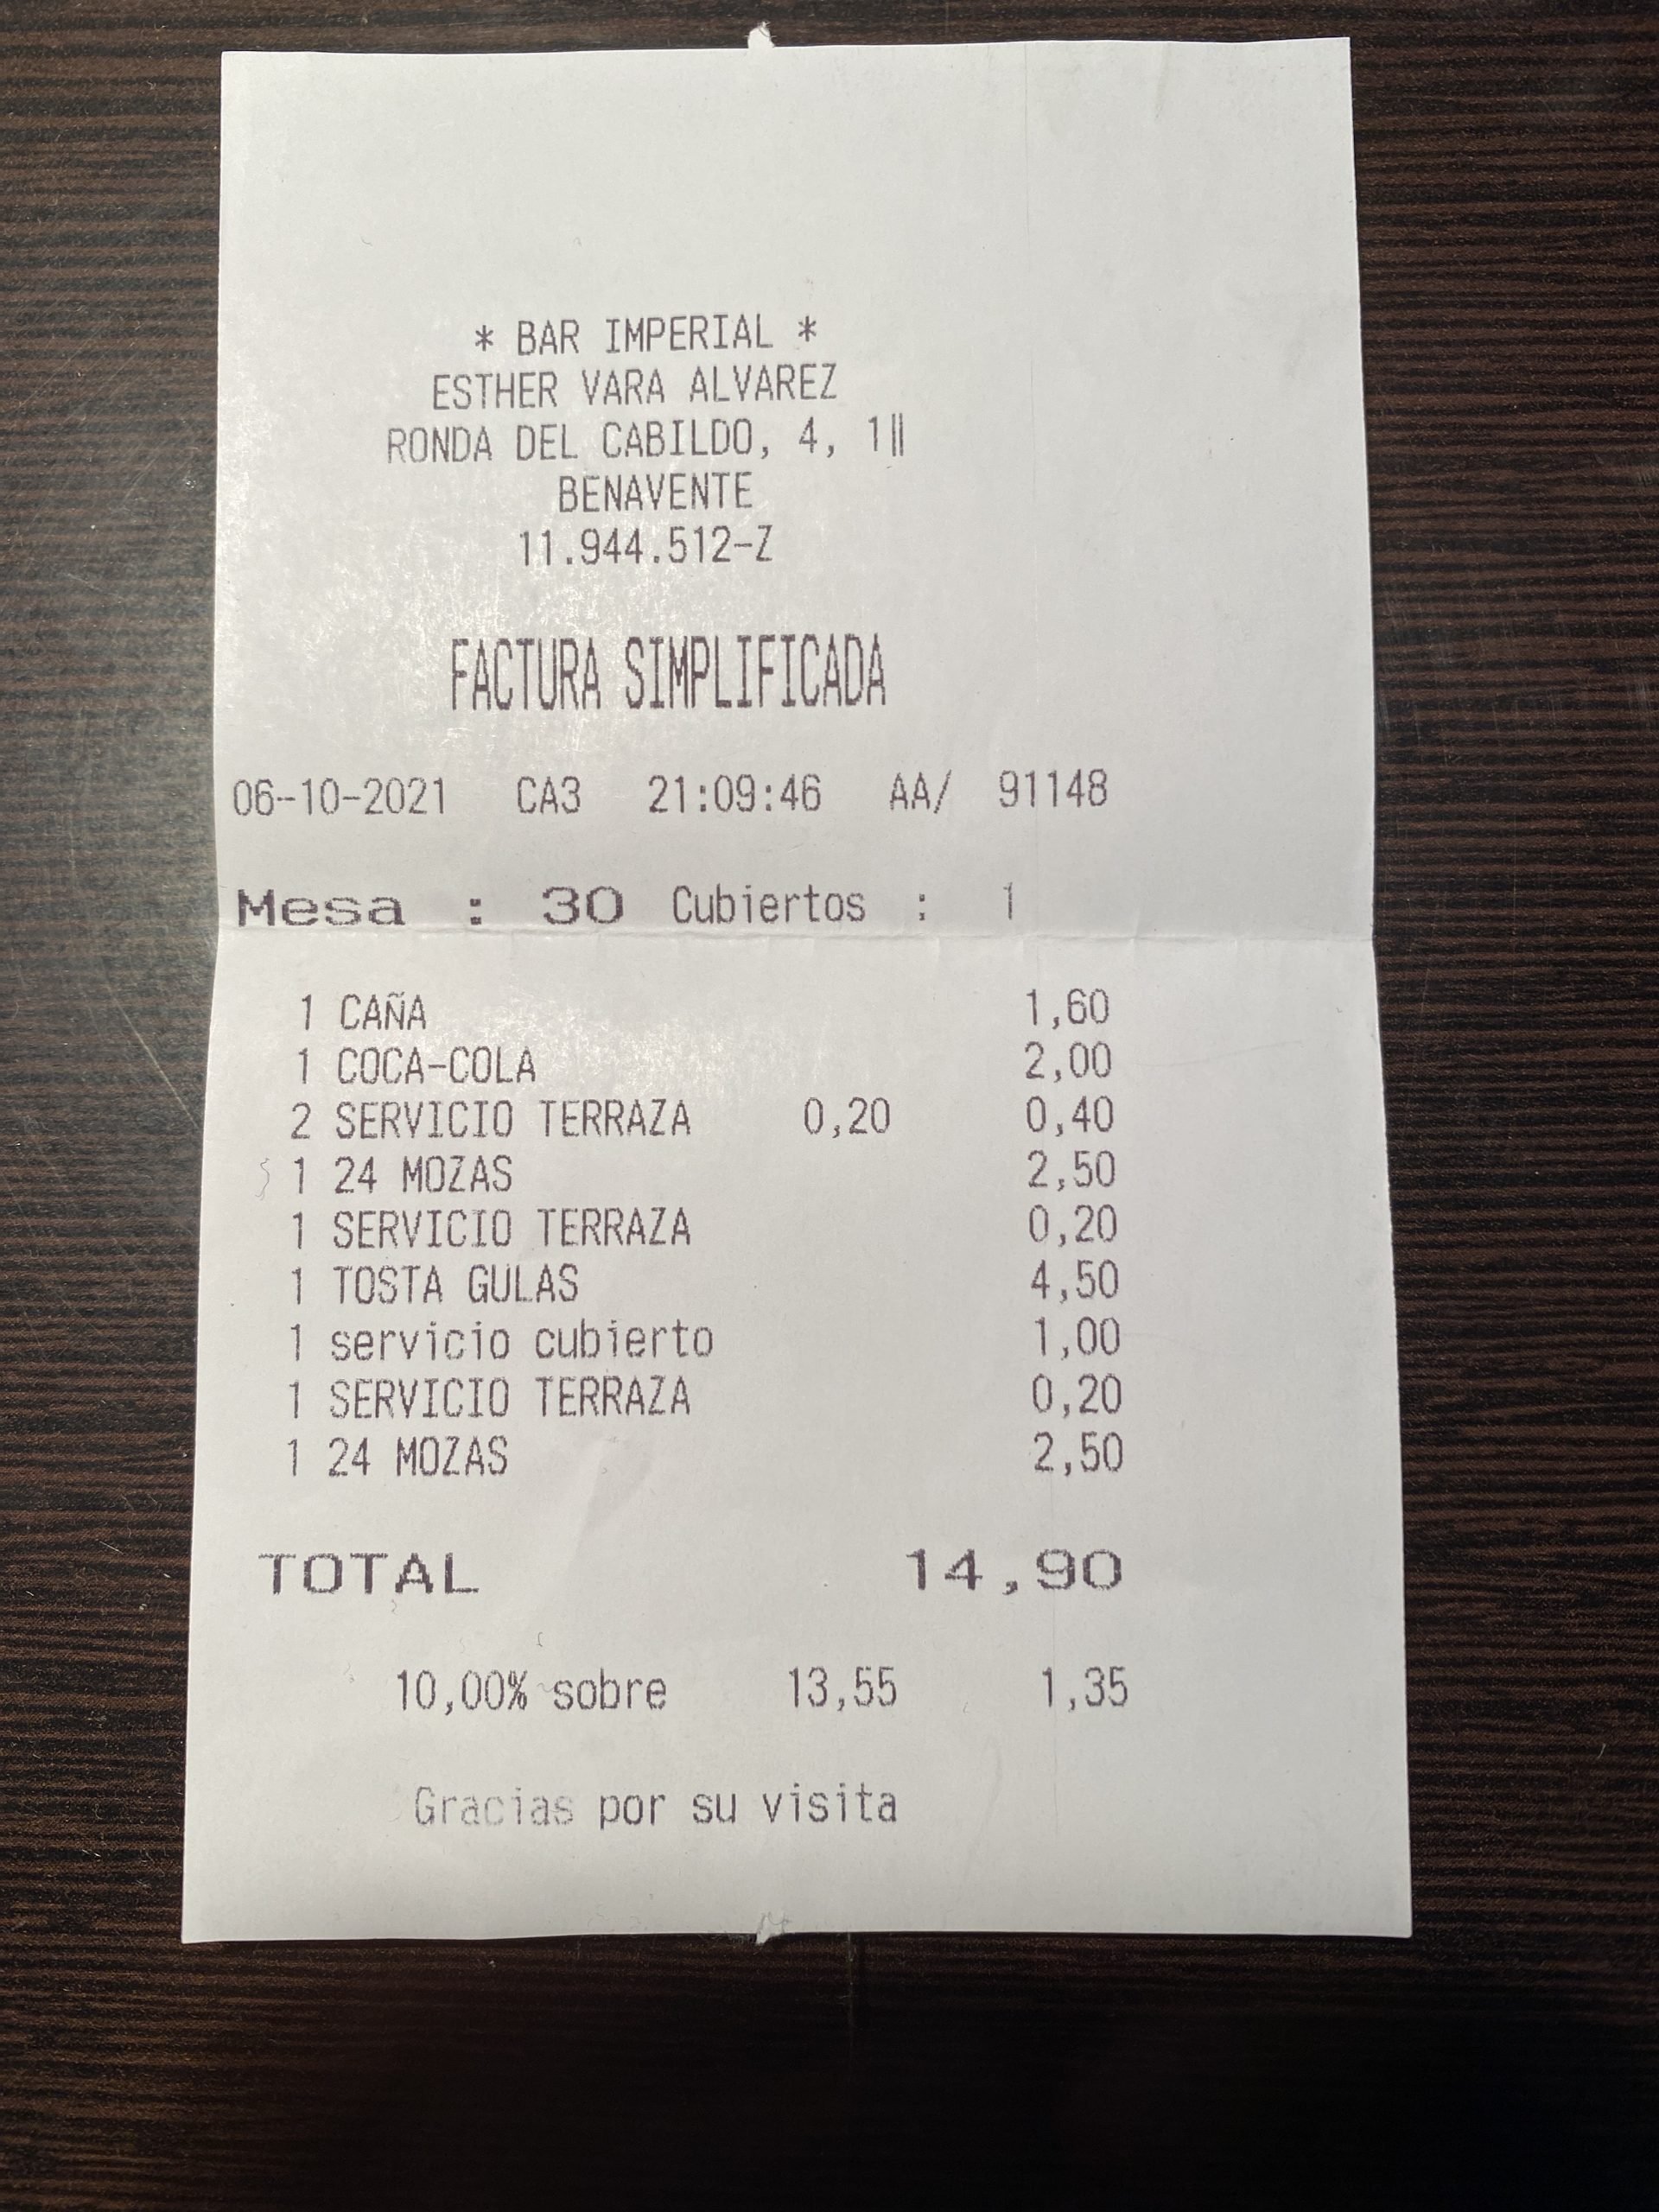 男子指控餐馆“每次服务都额外收费”·餐馆回应：“收费的是酒水”